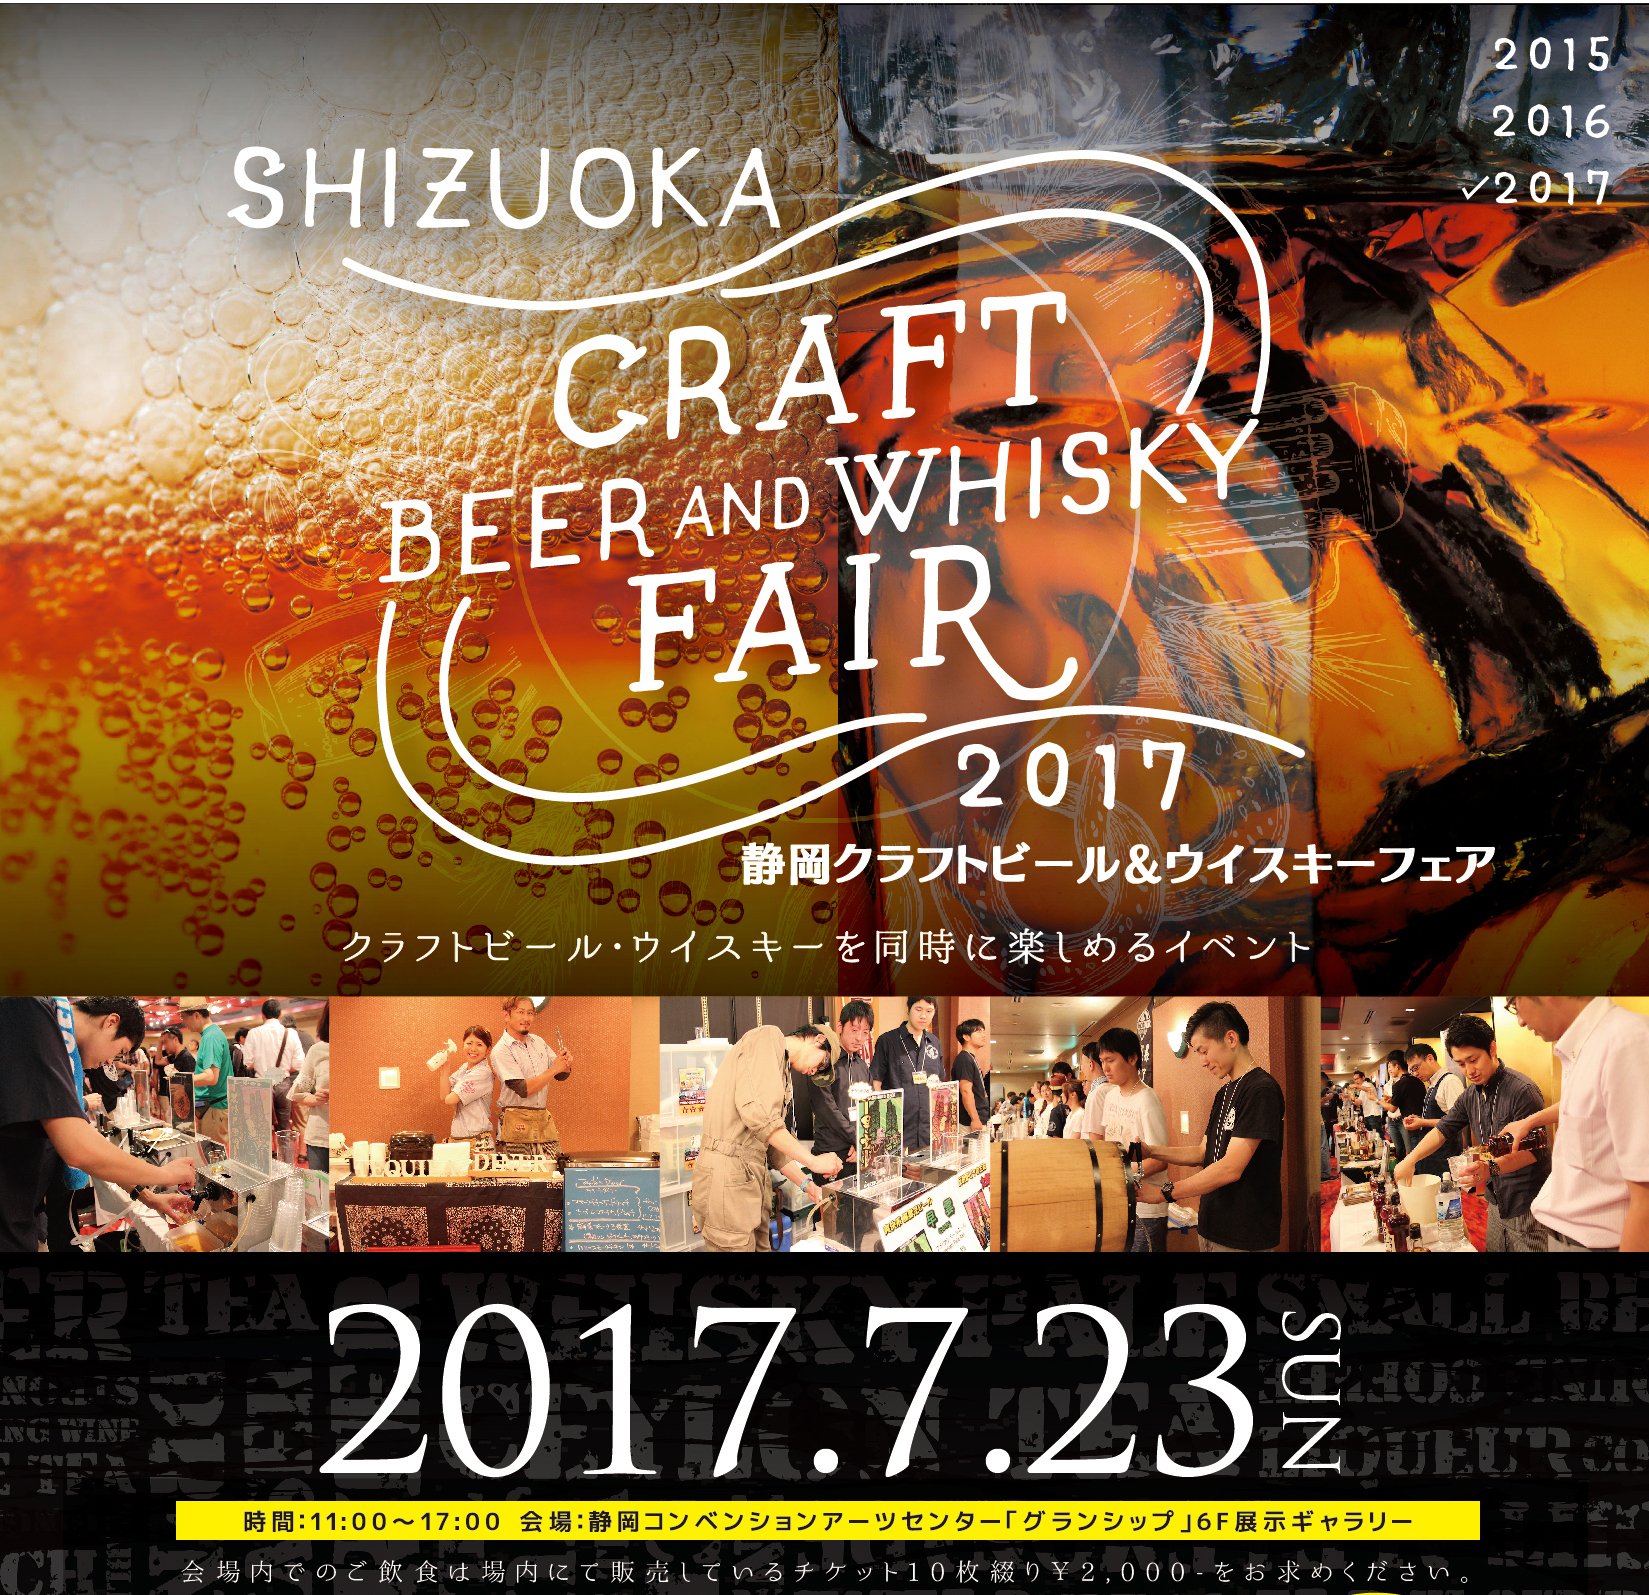 静岡蒸溜所の先行見学ツアーも 7 23 日 静岡クラフトビール ウイスキーフェア 17 がパワーアップして開催 日本ビアジャーナリスト協会